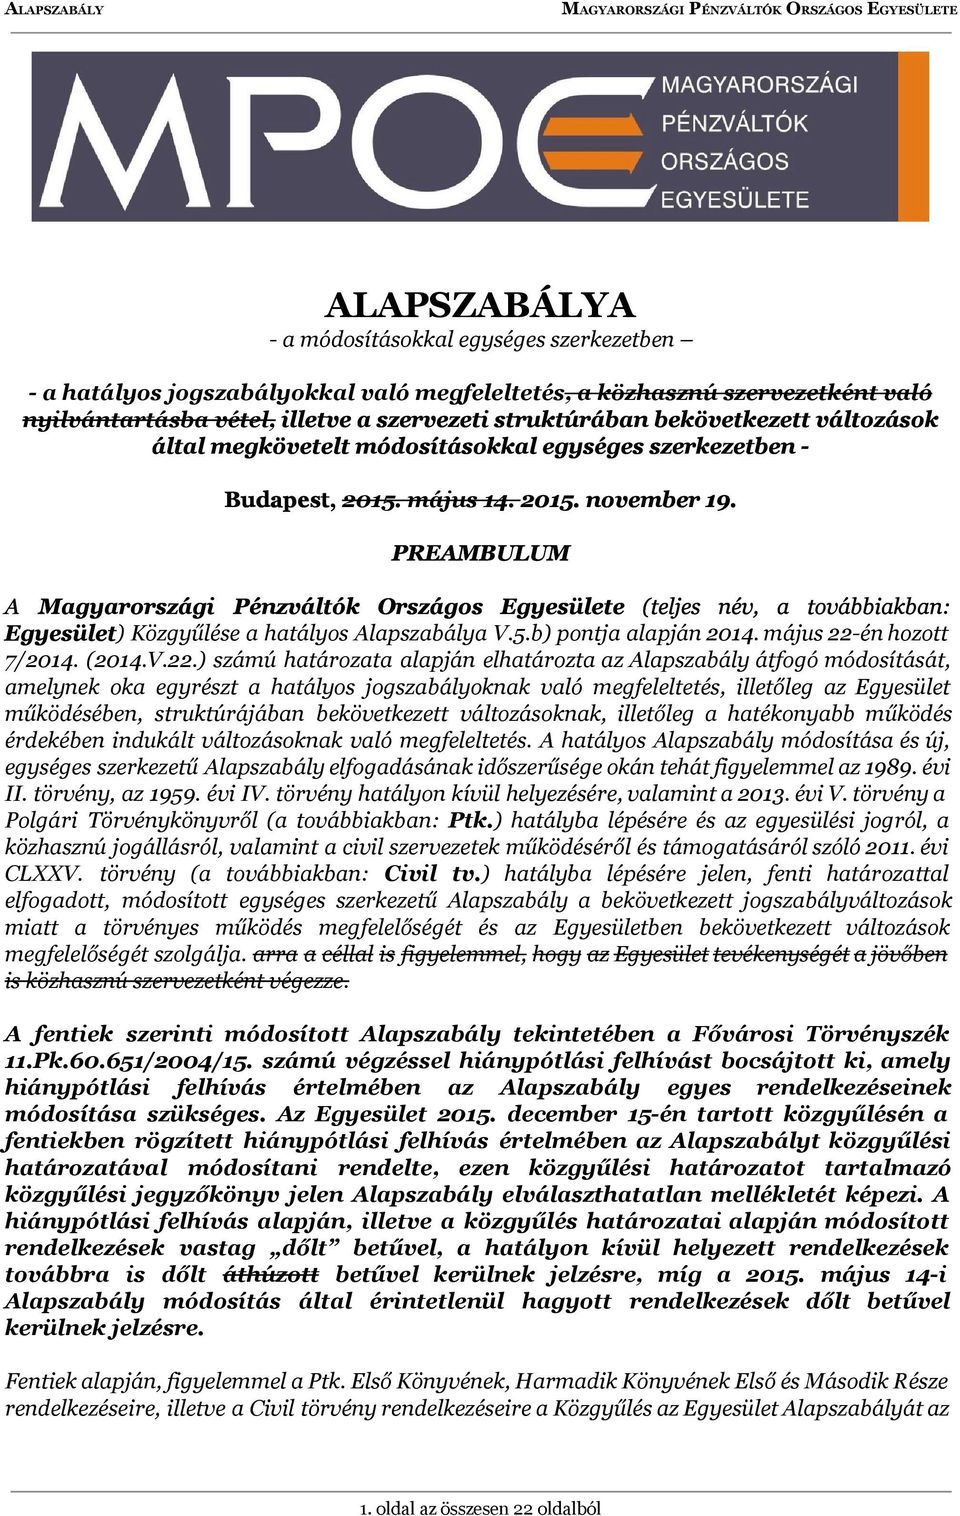 PREAMBULUM A Magyarországi Pénzváltók Országos Egyesülete (teljes név, a továbbiakban: Egyesület ) Közgyűlése a hatályos Alapszabálya V.5.b) pontja alapján 2014. május 22-